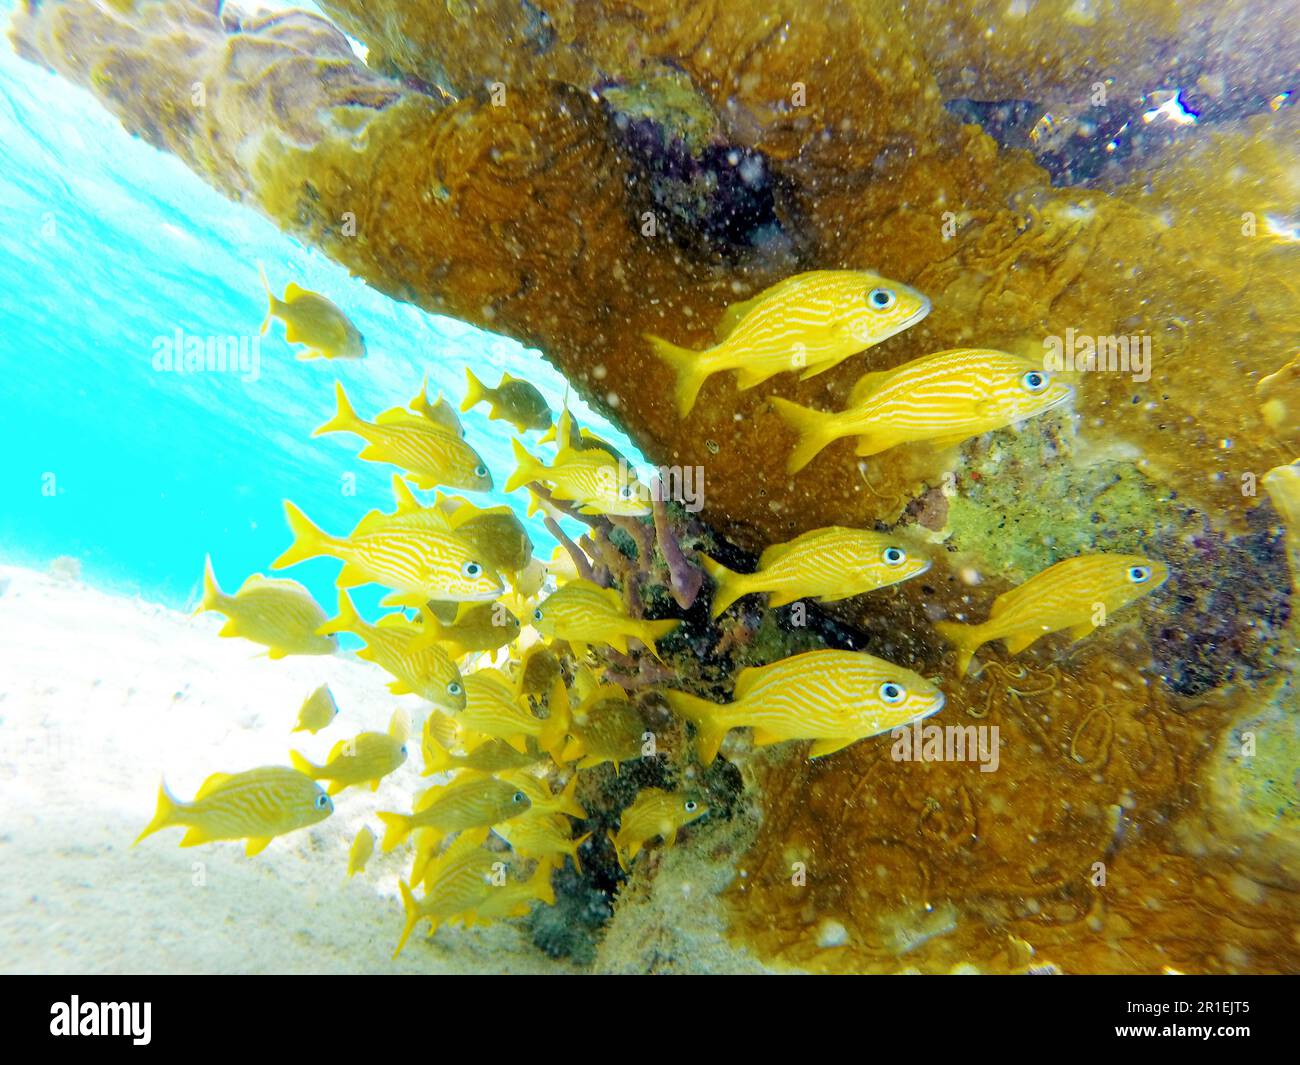 Vie sous-marine, image colorée montrant un groupe de poissons jaunes nageant près d'un récif de corail très coloré, eau turquoise en arrière-plan Banque D'Images